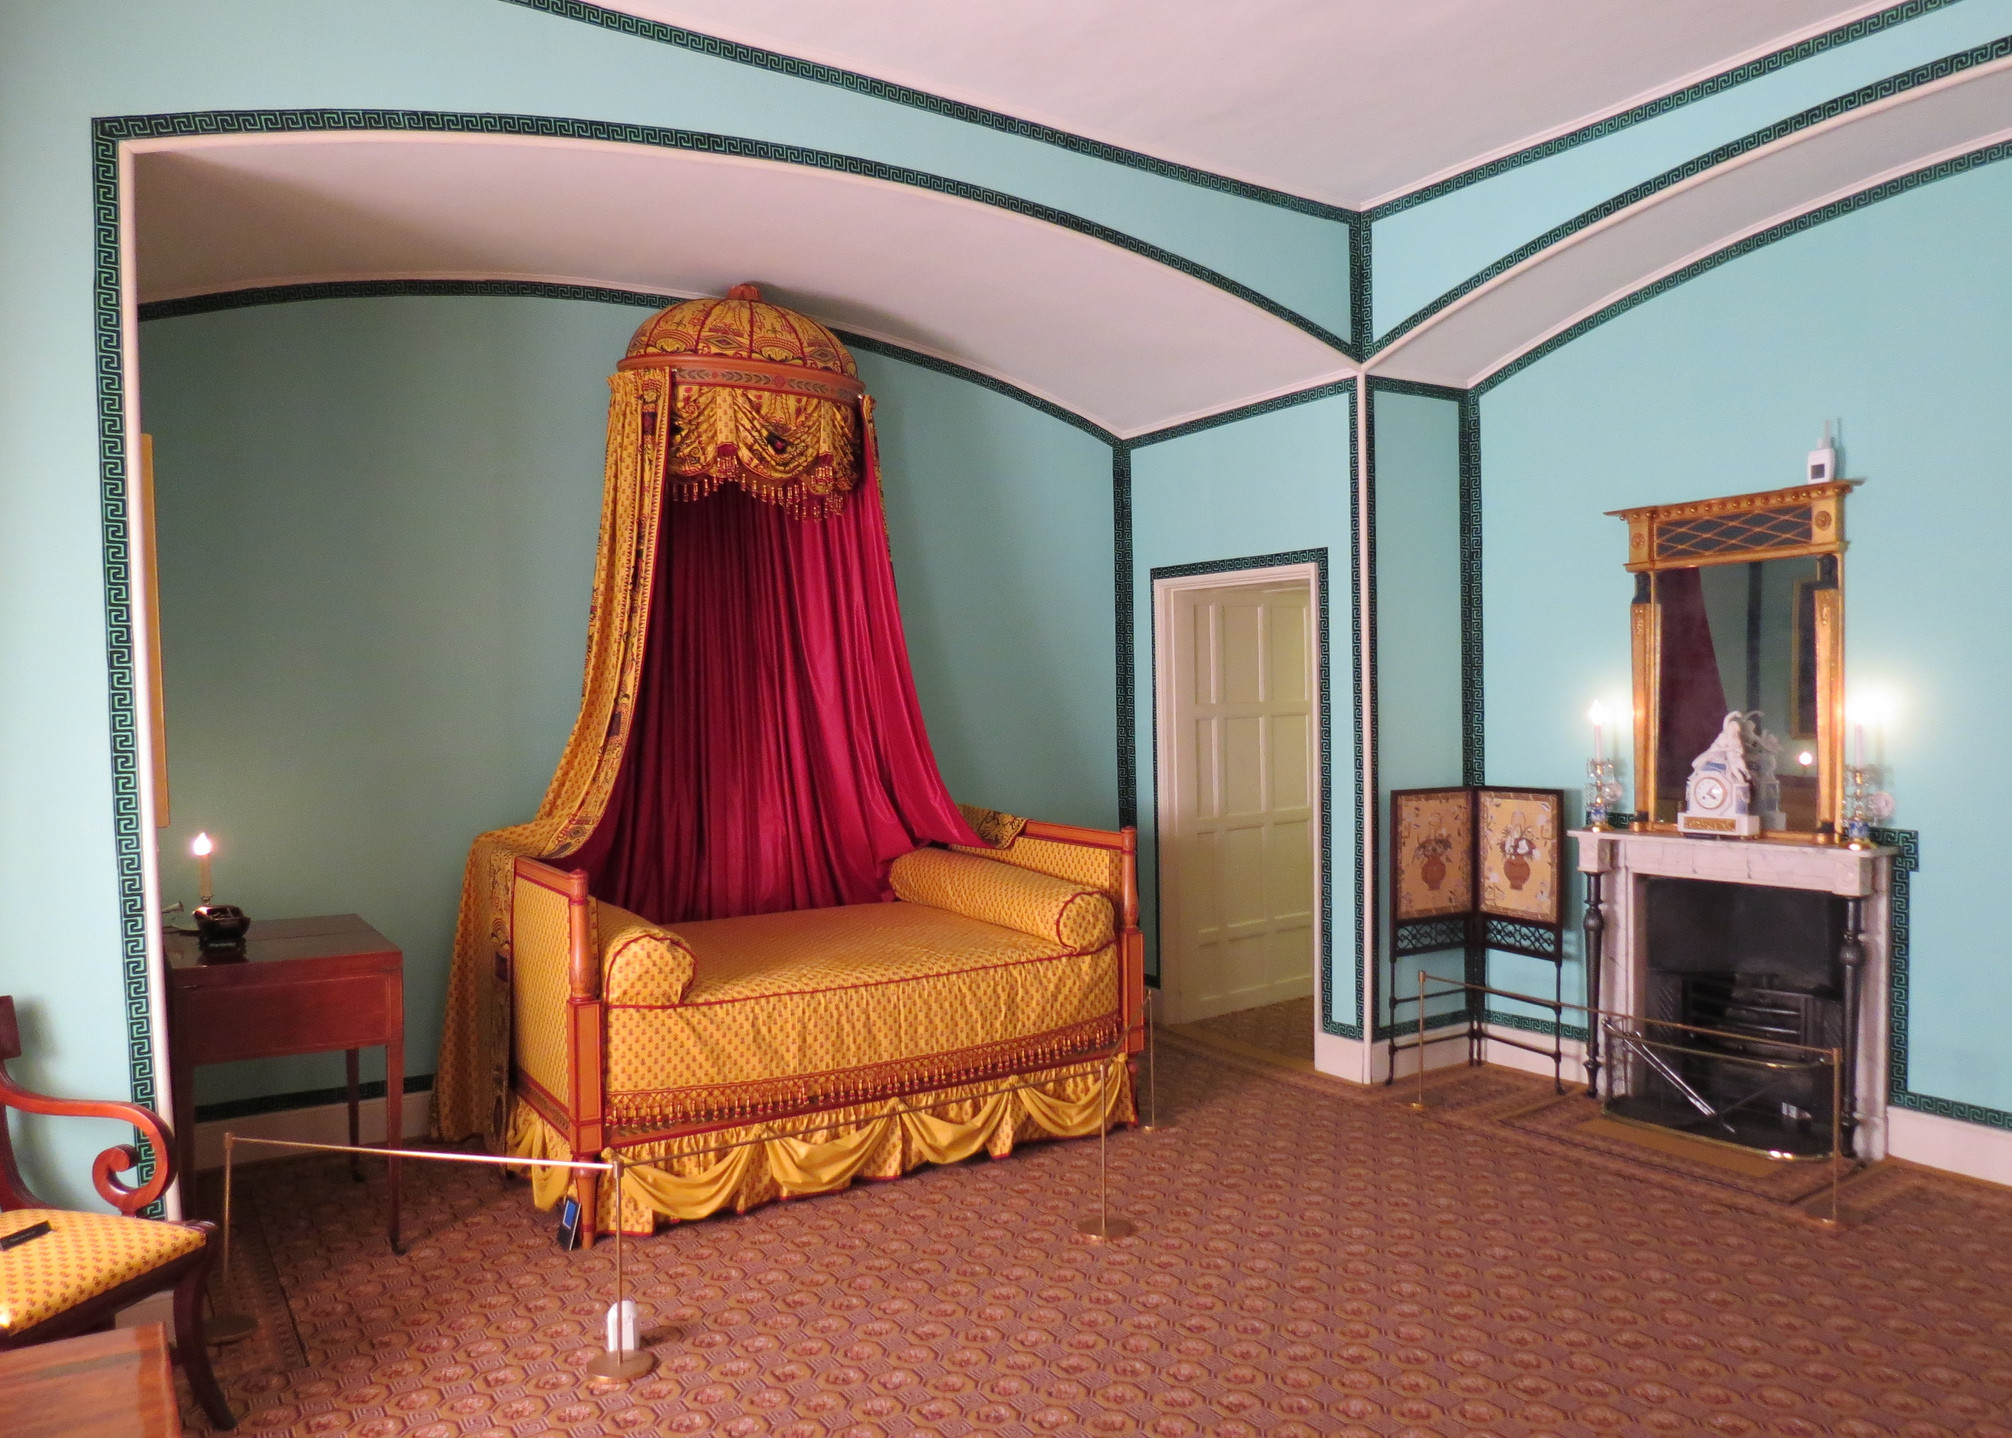 Princess Bedroom at Kew Palace